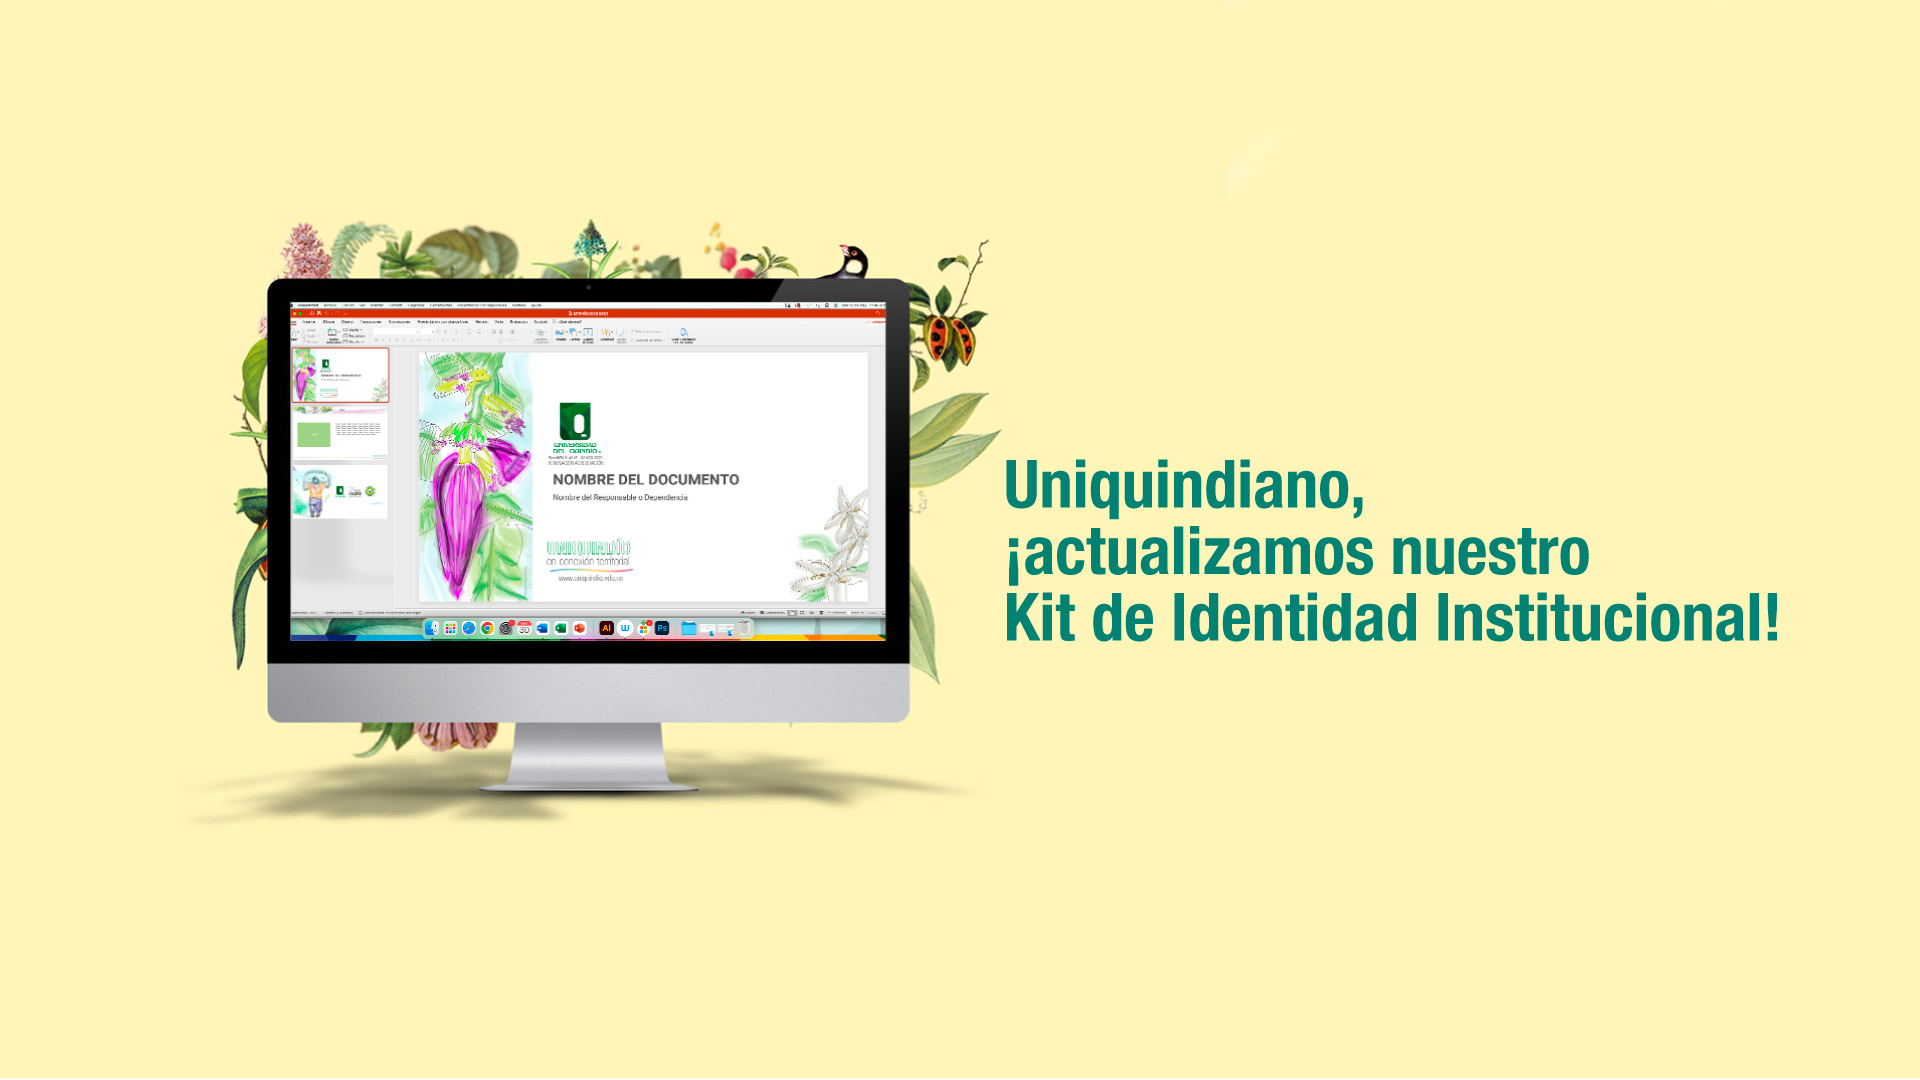 Uniquindiano, ¡actualizamos nuestro Kit de Identidad Institucional!